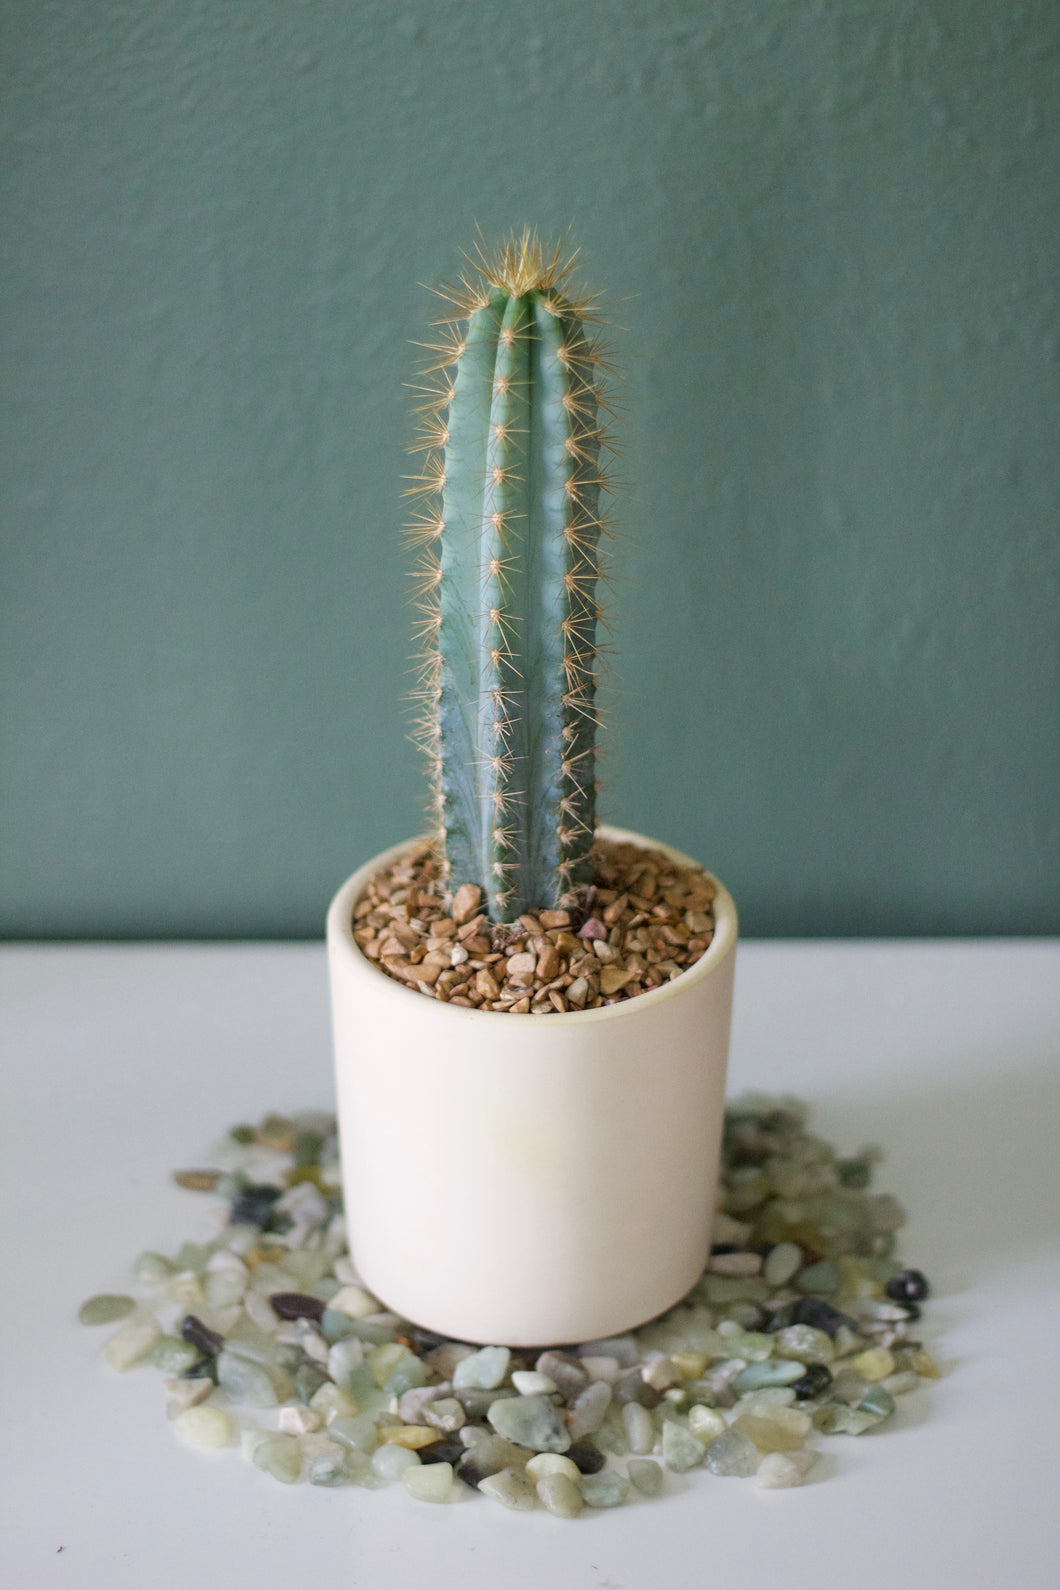 Blue Torch Cactus (Pilosocereus Pachycladus)